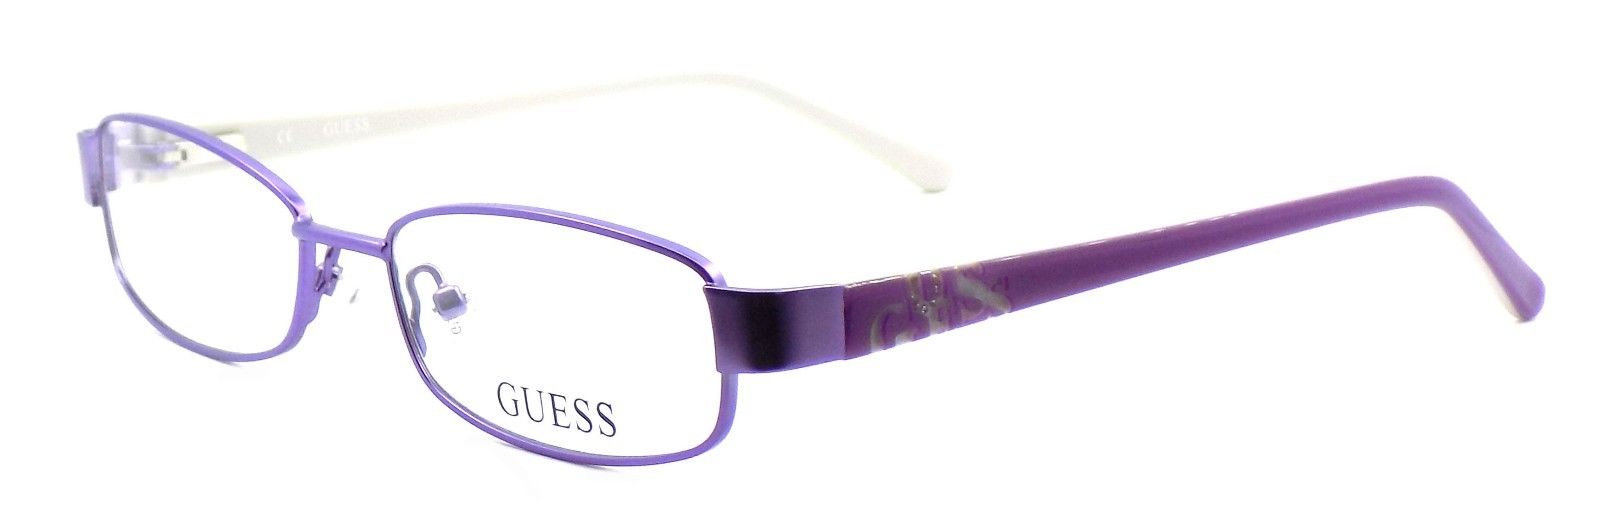 1-GUESS GU9127 PUR Women's Eyeglasses Frames PETITE 49-16-130 Purple Violet + CASE-715583033641-IKSpecs